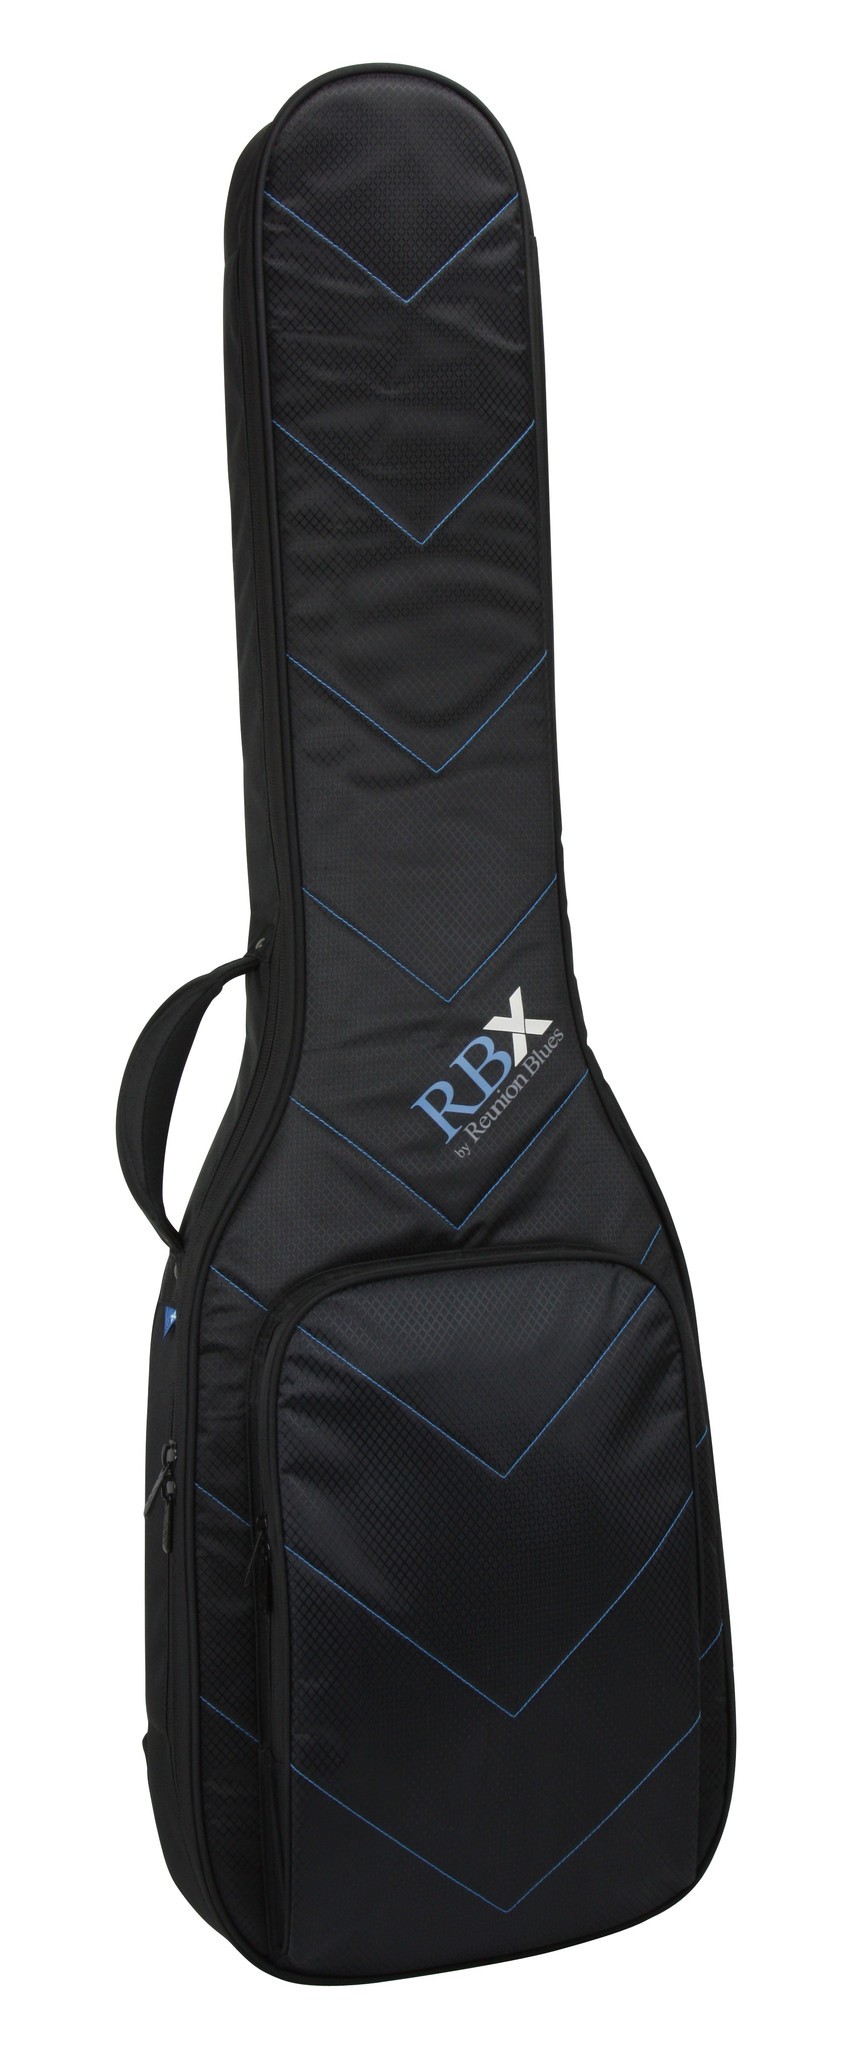 Reunion Blues Rbx Bass Guitar Bag Best Bass Gear